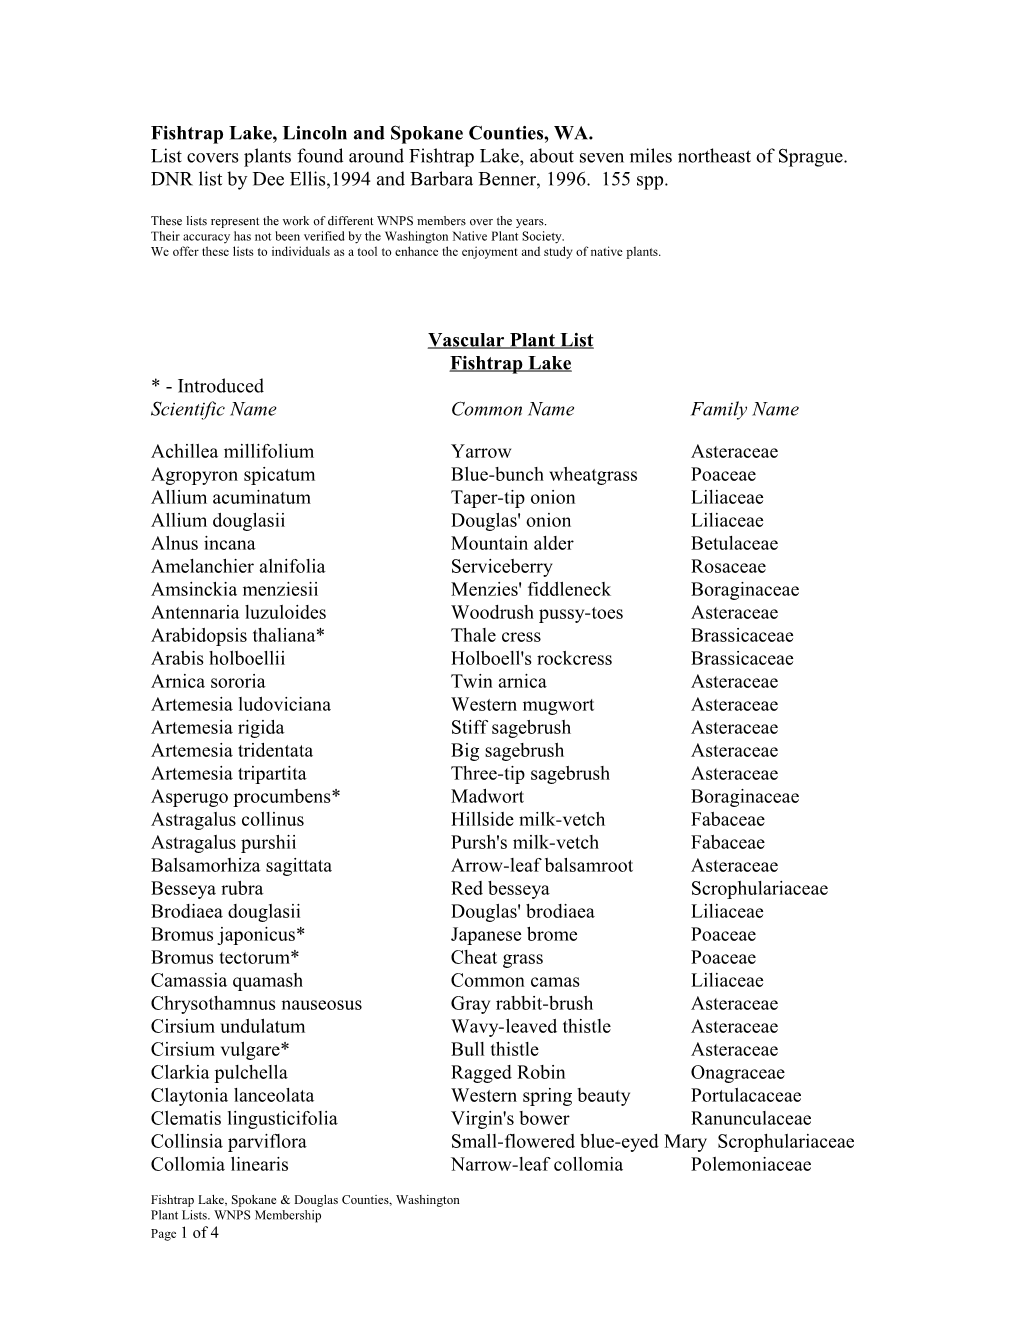 Vascular Plant List s8